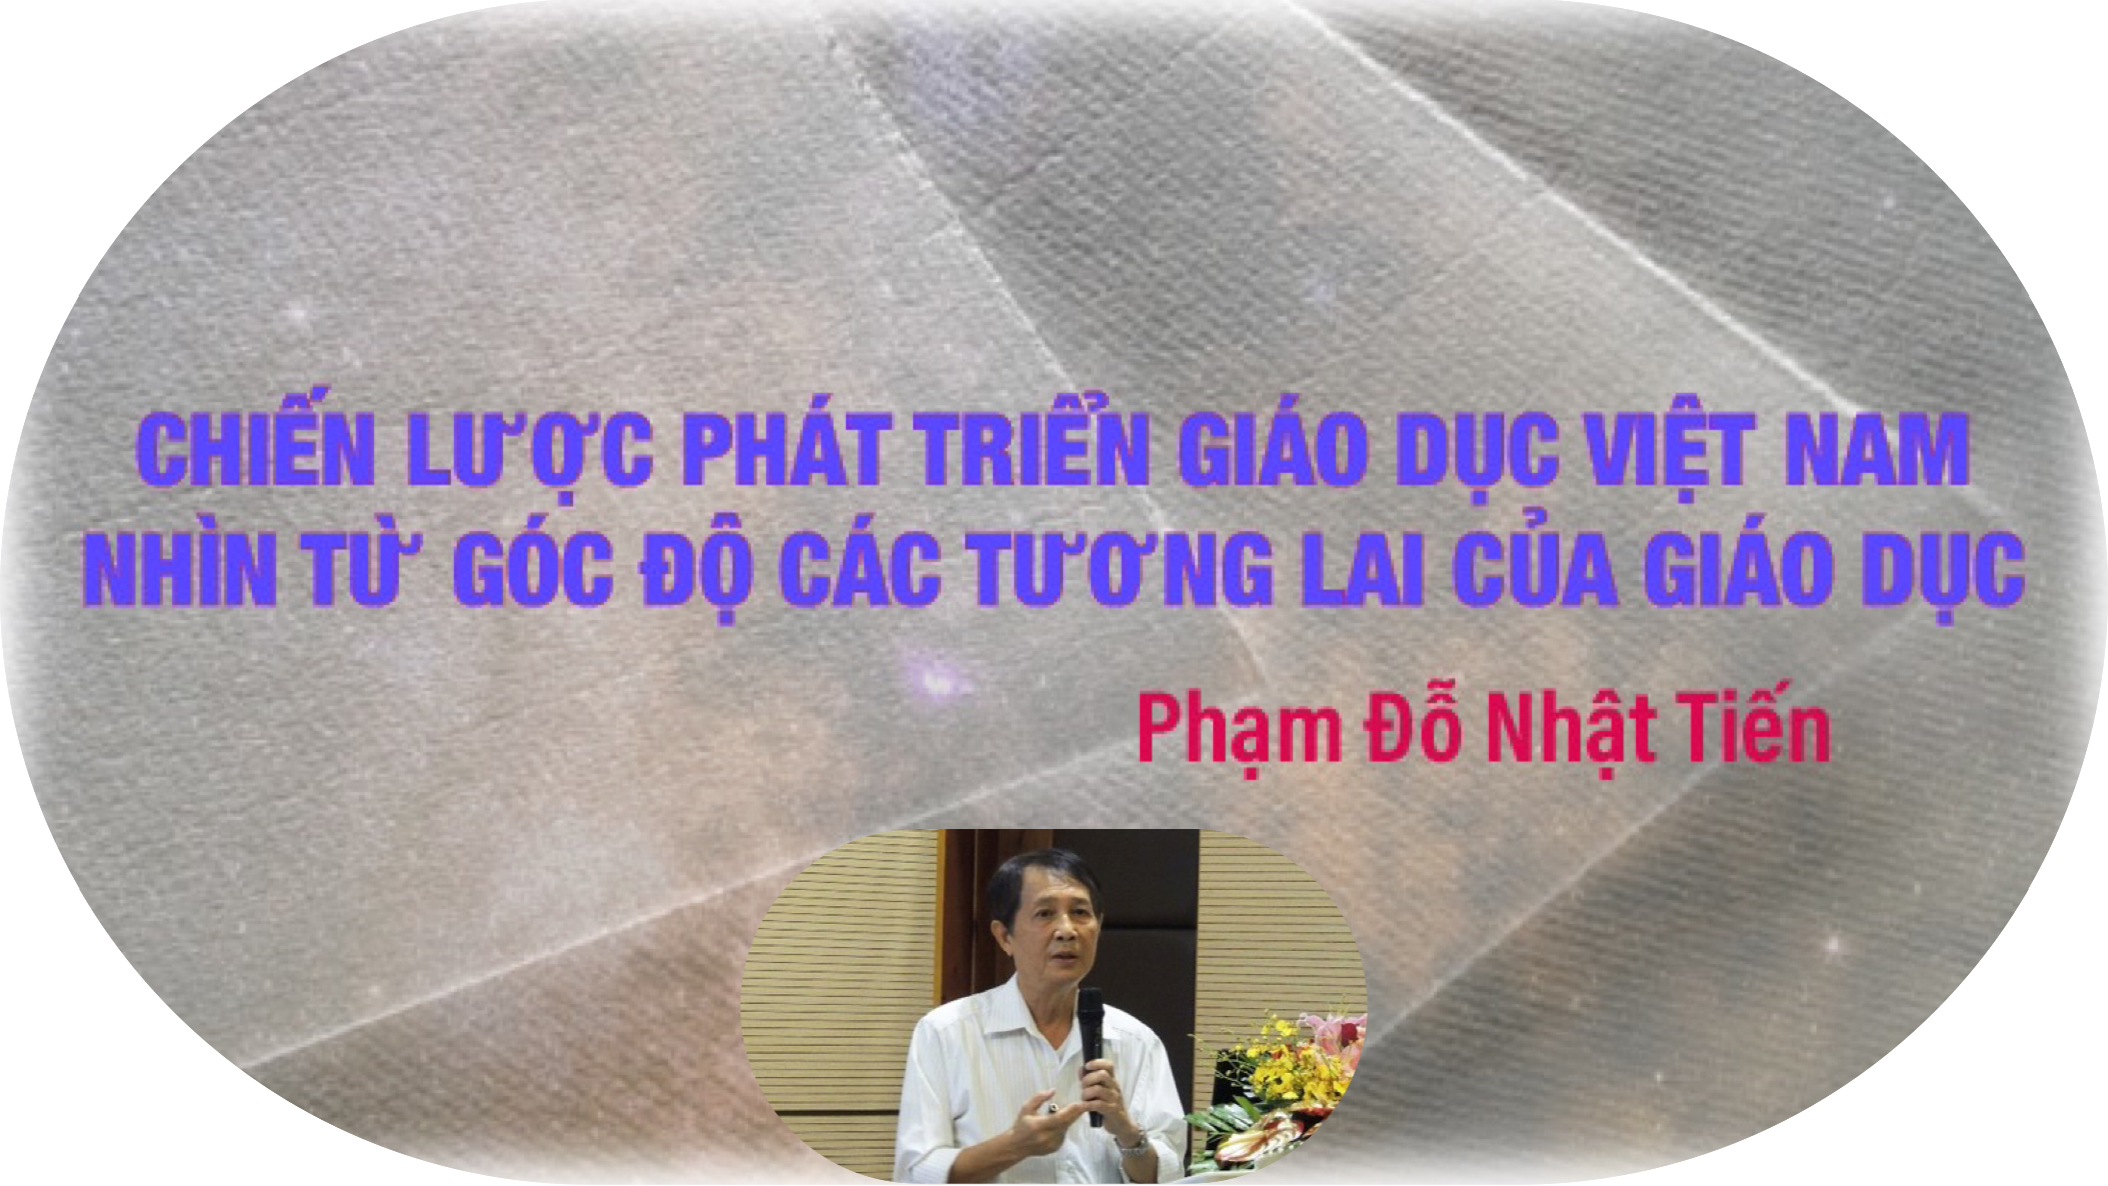 Chiến lược phát triển Giáo dục Việt Nam nhìn từ góc độ các tương lai của giáo dục – TSKH. Phạm Đỗ Nhật Tiến